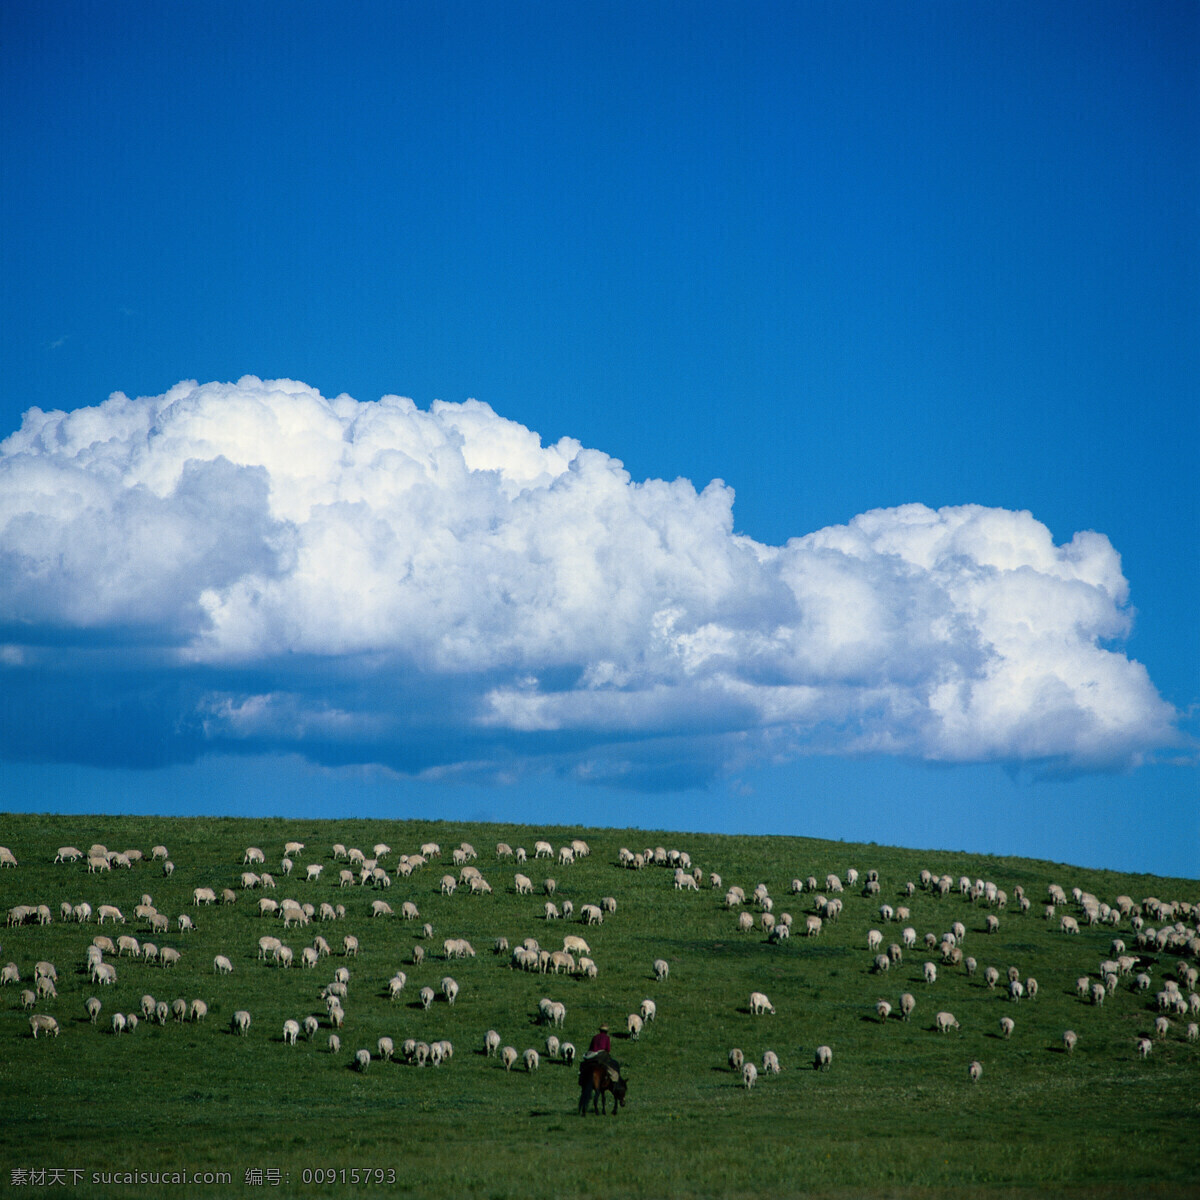 草原牧羊 田園真舒服 田園 蓝天 草原 羊群 白云 放羊 牧羊 牧民 自然景观 自然风景 綠意盎然 摄影图库 300